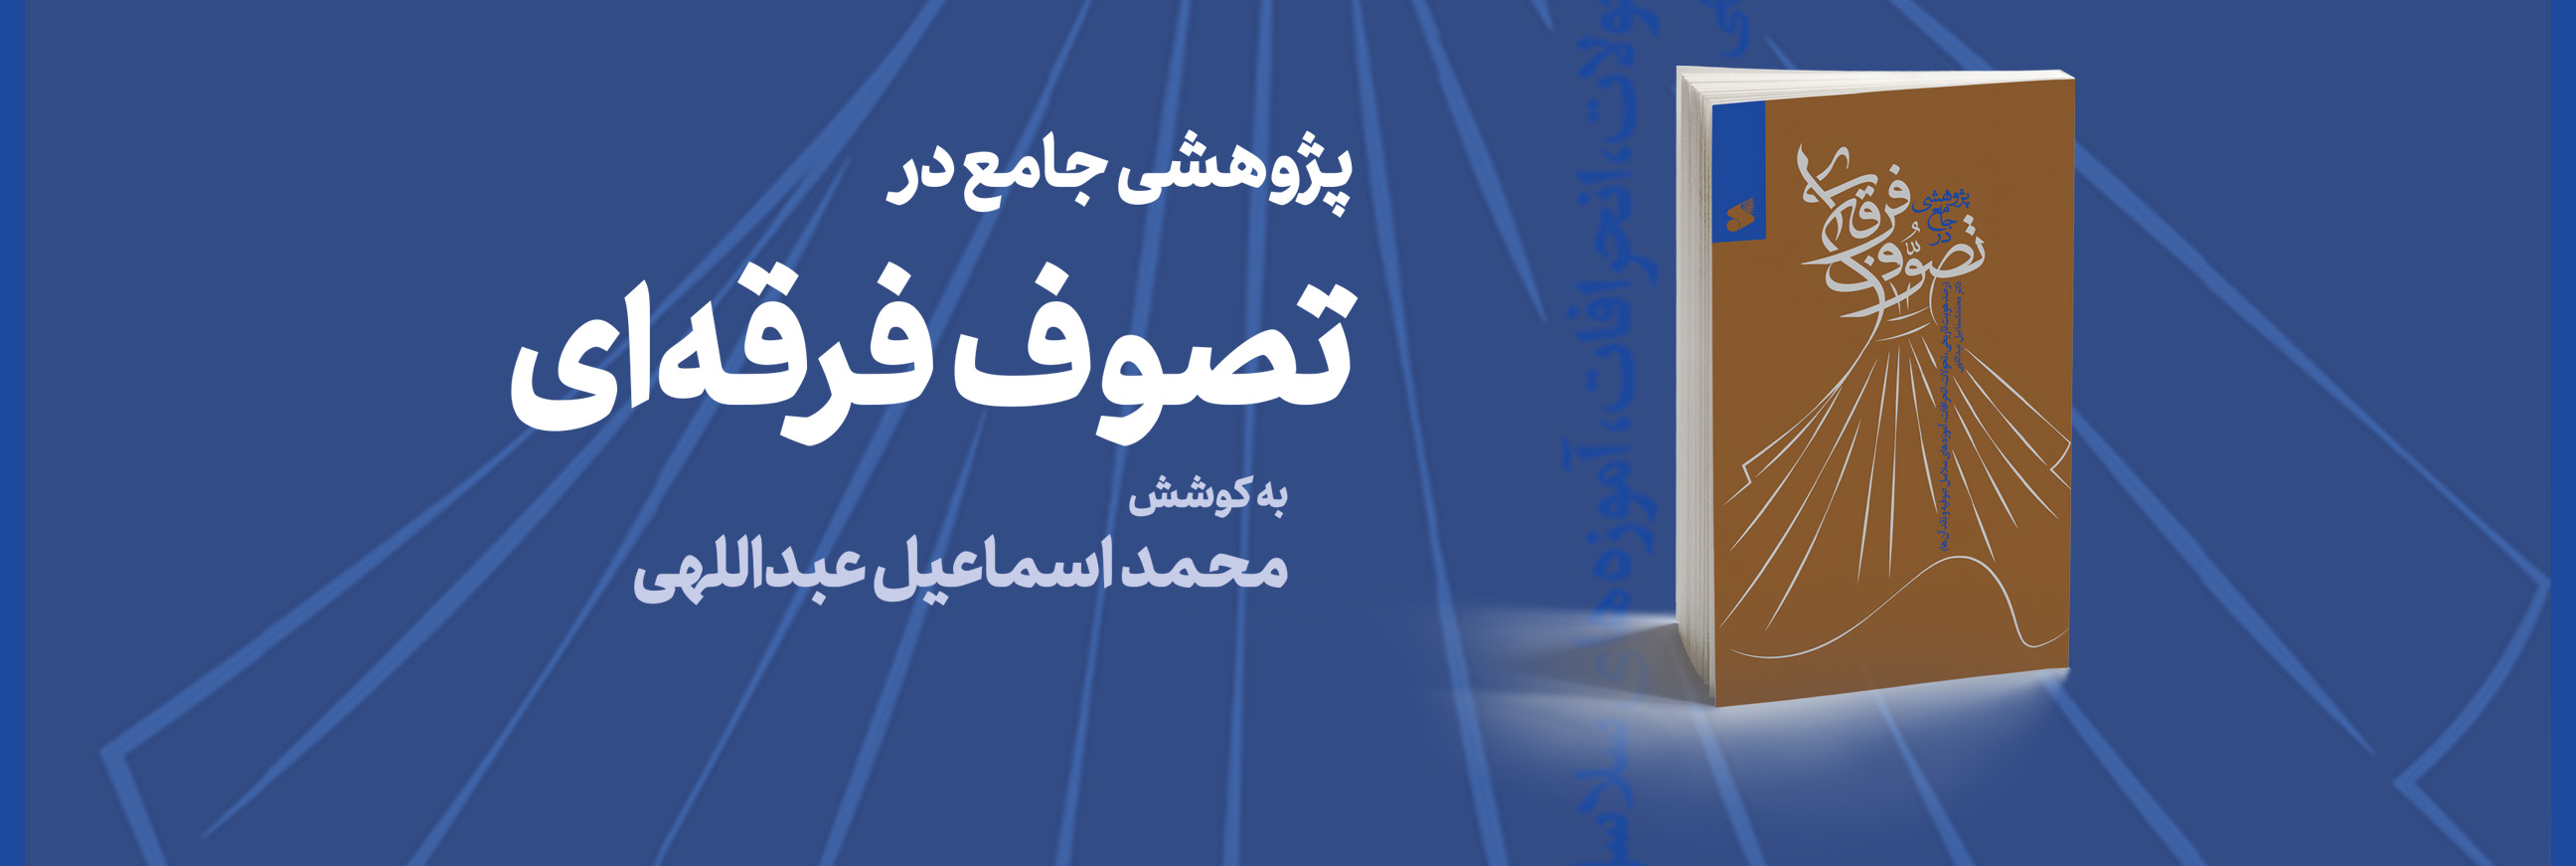 معرفی و نقد تصوف تشکیلاتی فعال در ایران و جهان در یک کتاب